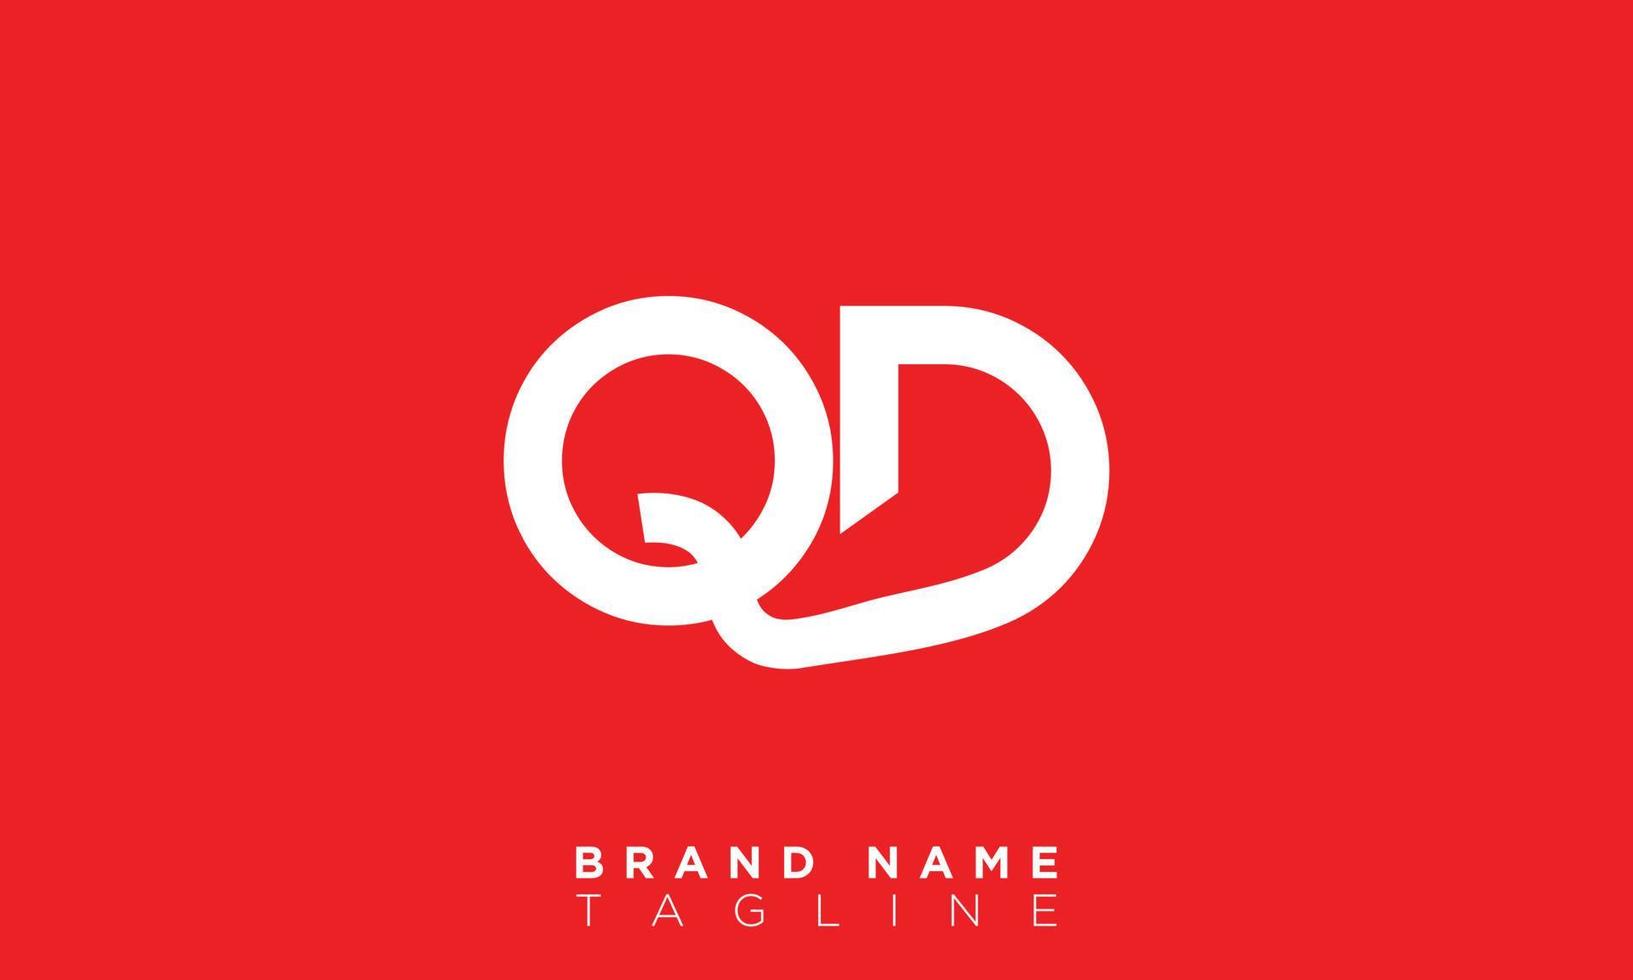 QD Alphabet letters Initials Monogram logo DQ, Q and D vector